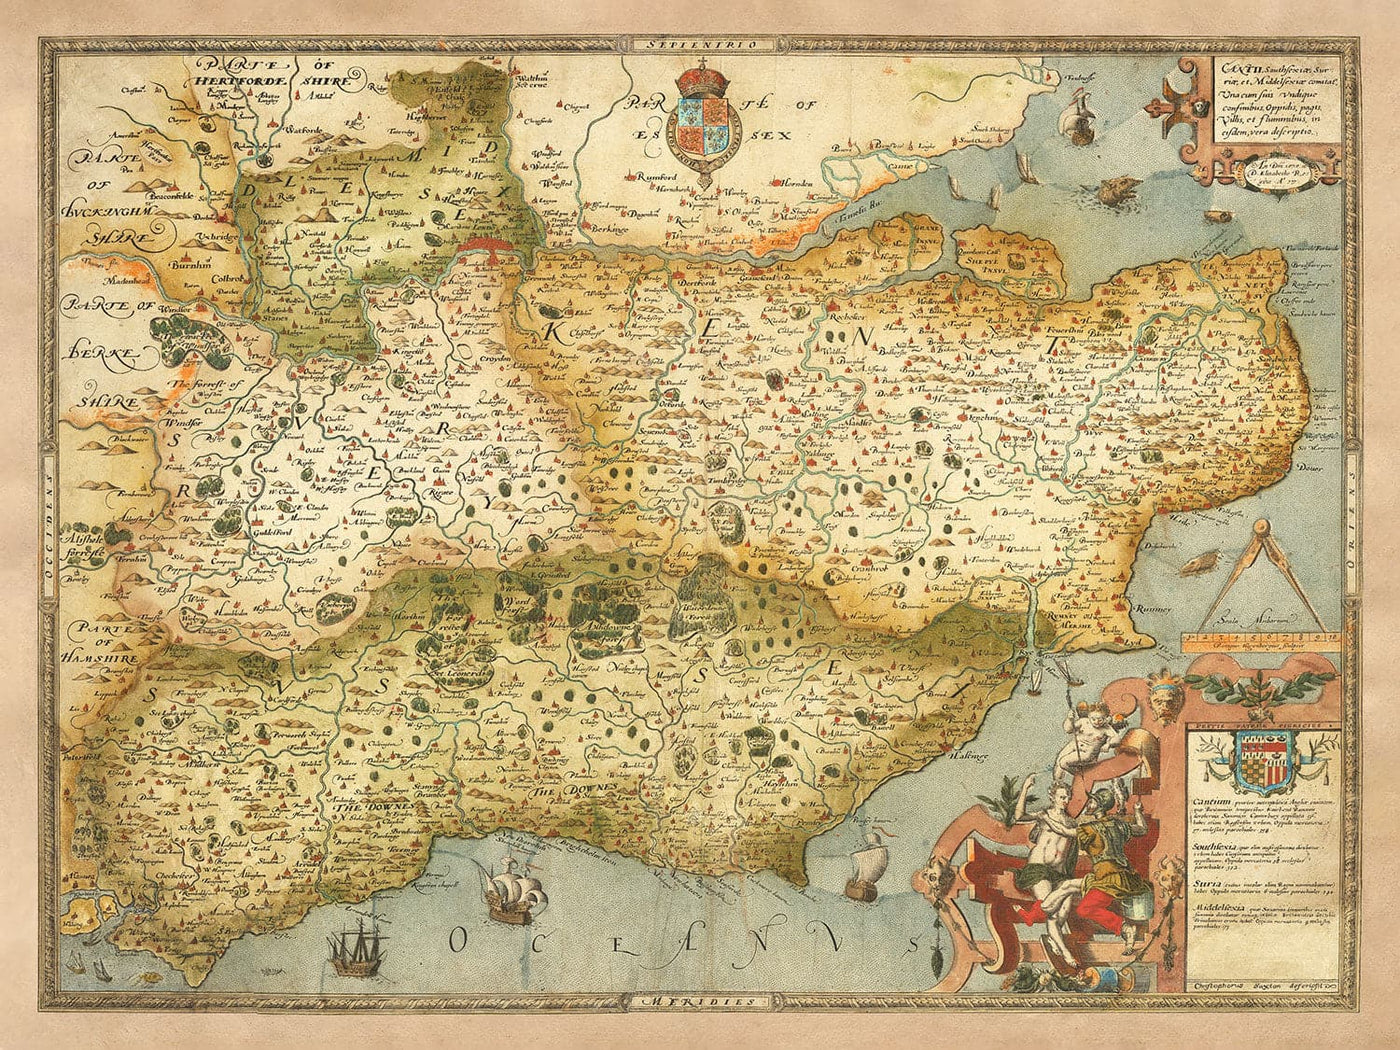 Ancienne carte du sud-est de l'Angleterre en 1575 par Saxton - Rare première carte de Londres, Kent, Sussex, Surrey, Middlesex